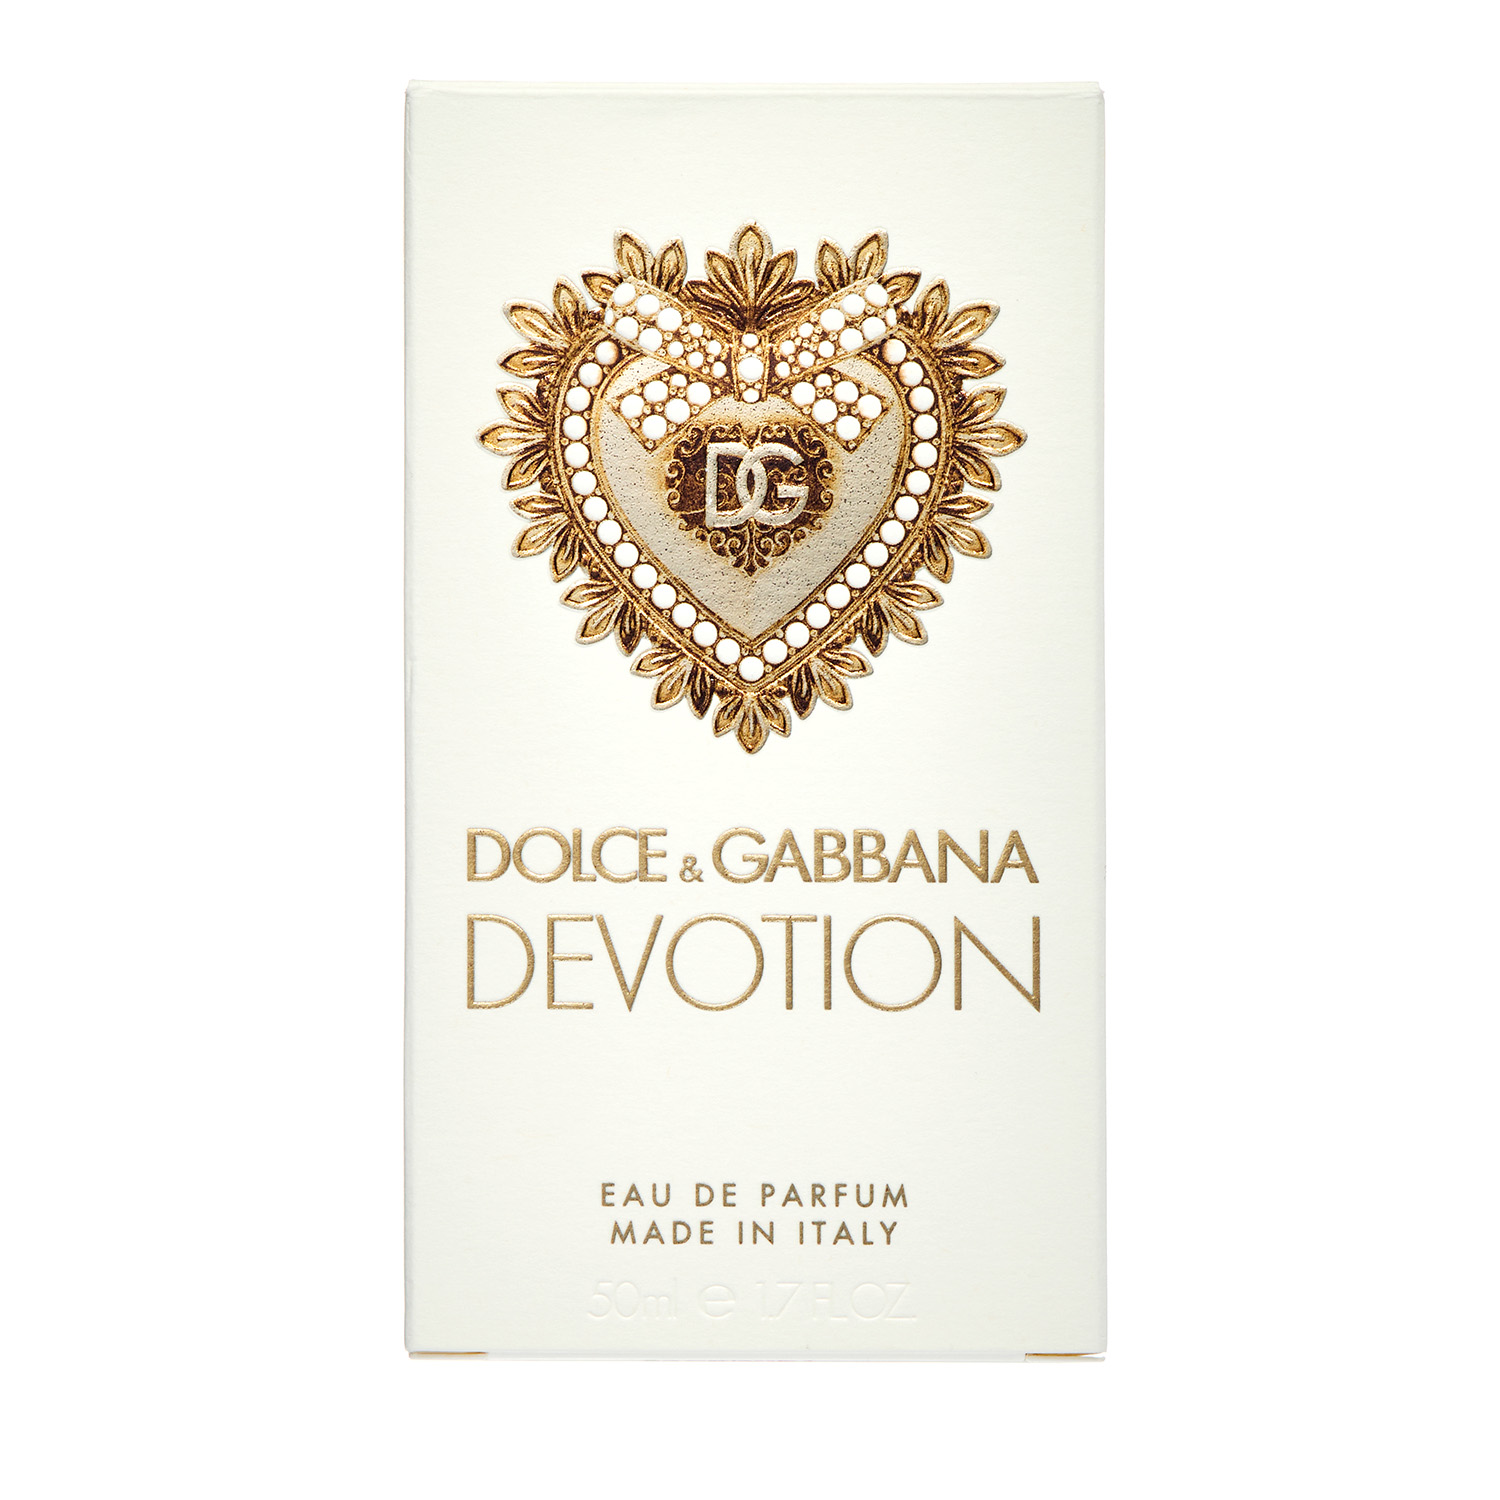 Dolce & Gabbana Devotion Eau de Parfum, Perfume for Women, 1.7 oz - image 3 of 5